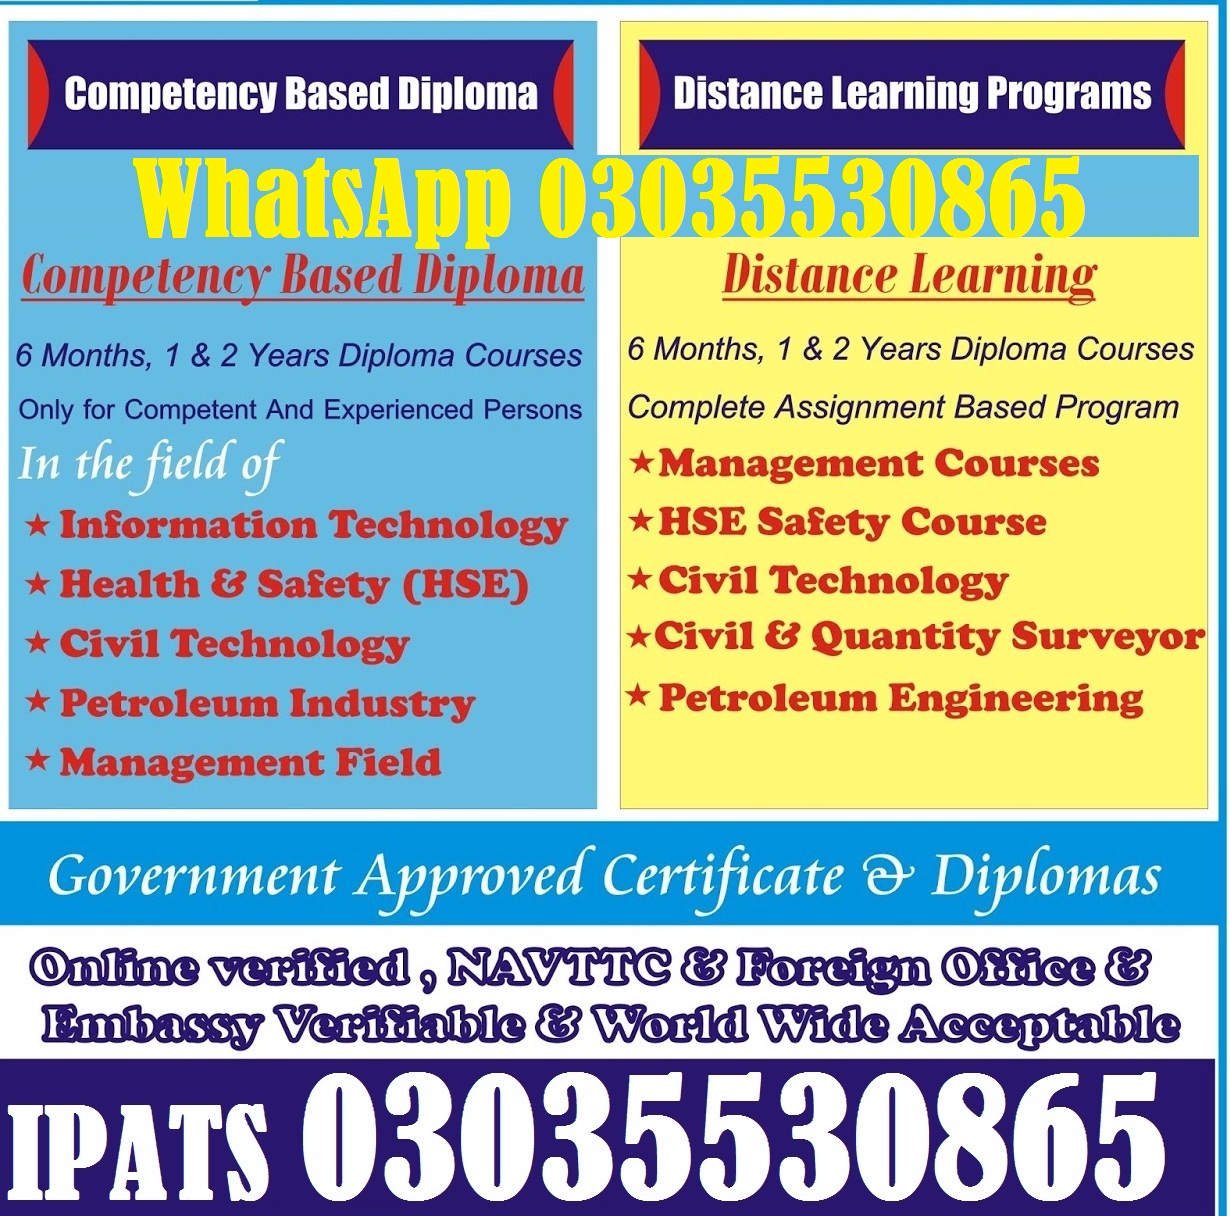 SOLIDWORKS Professional Training in Rawalpindi  http://www.ipatsedu.com